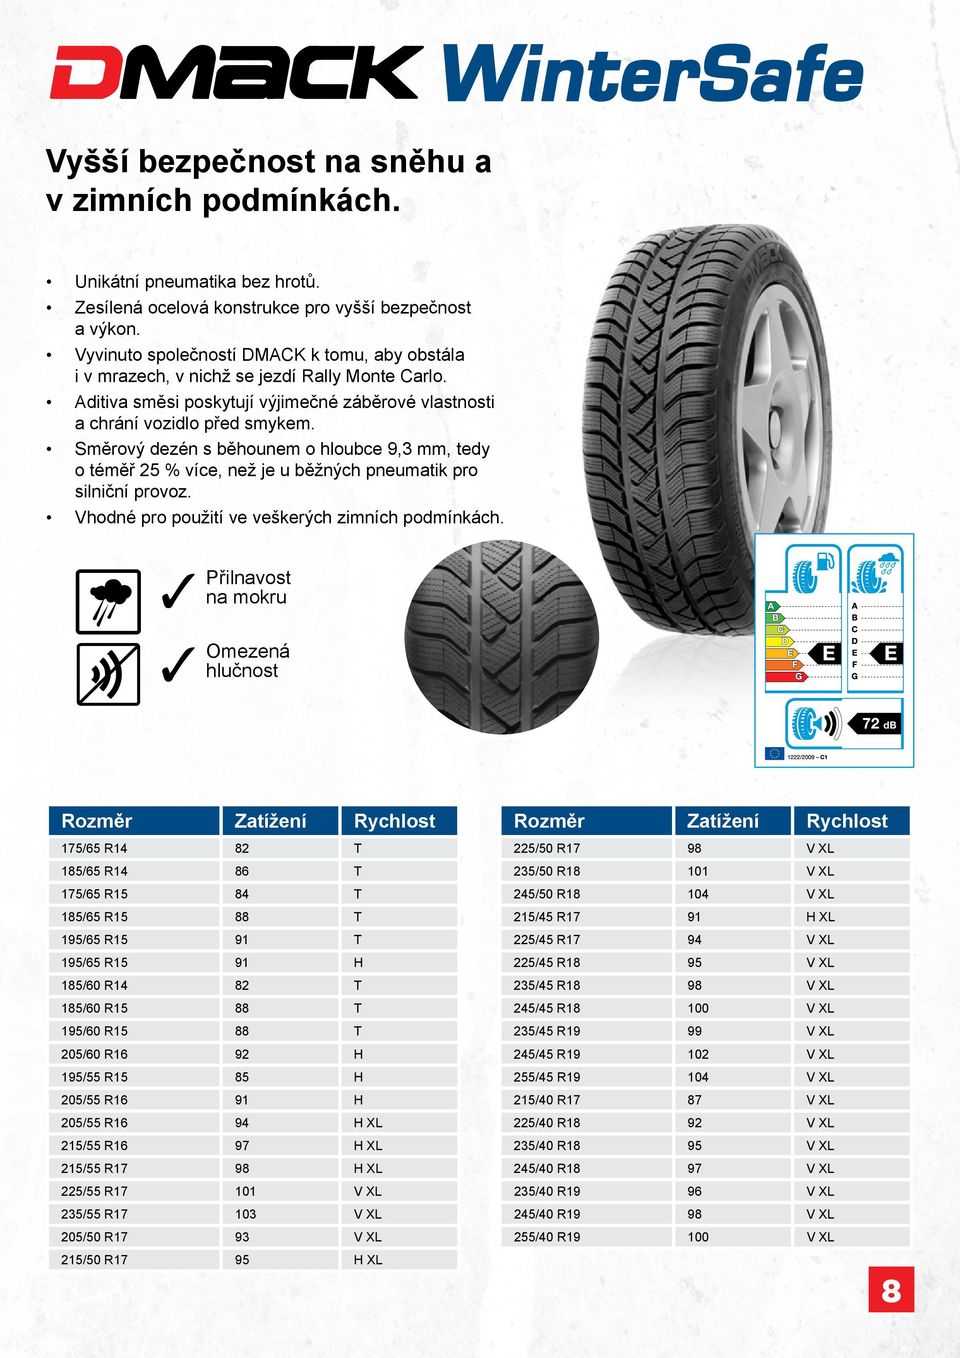 Směrový dezén s běhounem o hloubce 9,3 mm, tedy o téměř 25 % více, než je u běžných pneumatik pro silniční provoz. hodné pro použití ve veškerých zimních podmínkách.